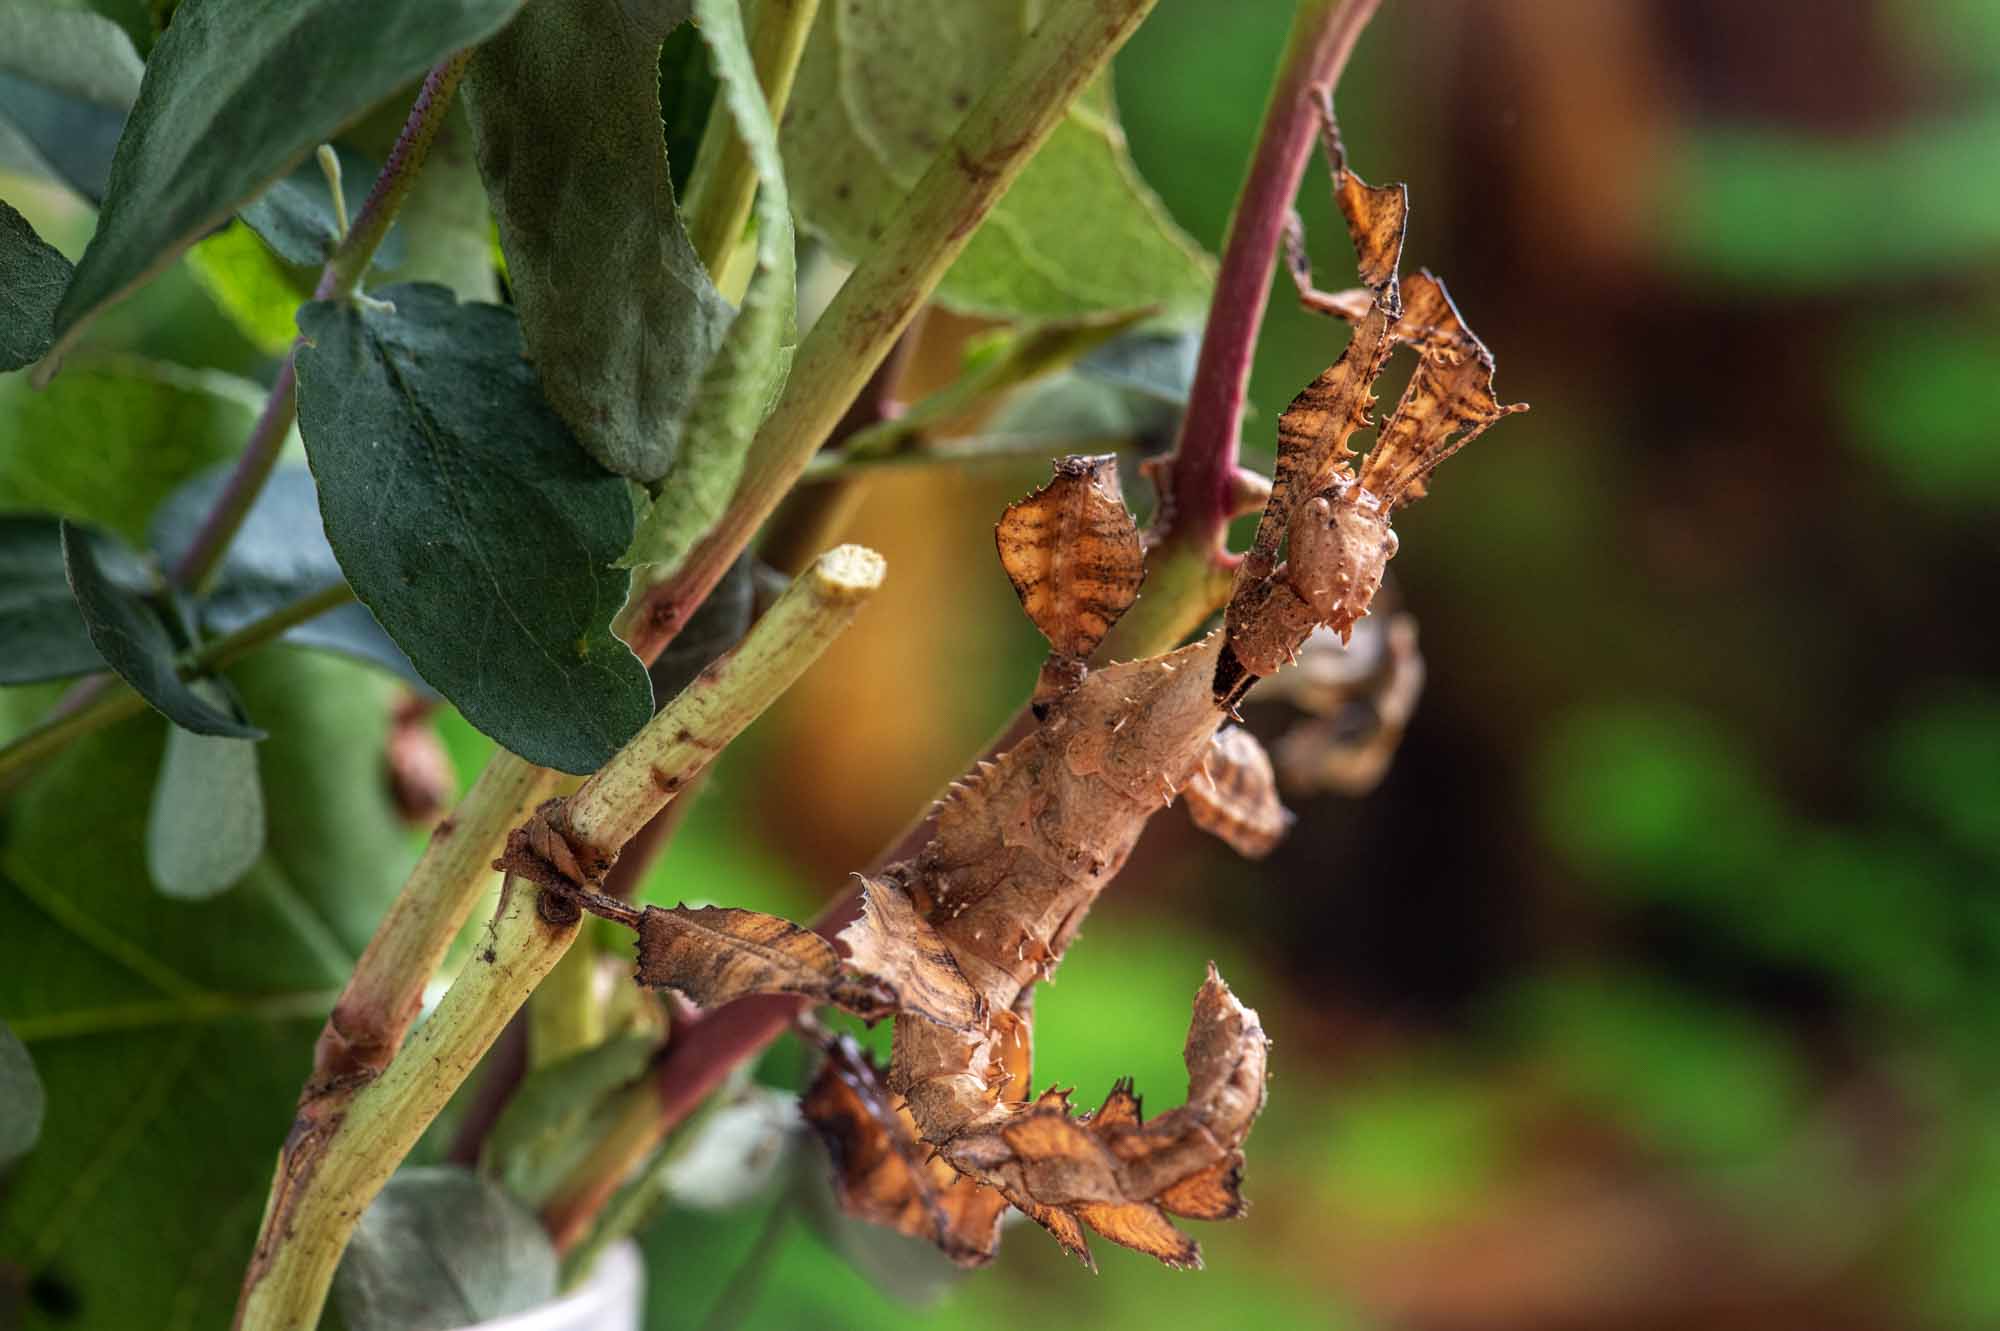 ユウレイヒレアシナナフシ | 虫の写真と生態なら昆虫写真図鑑「ムシミル」